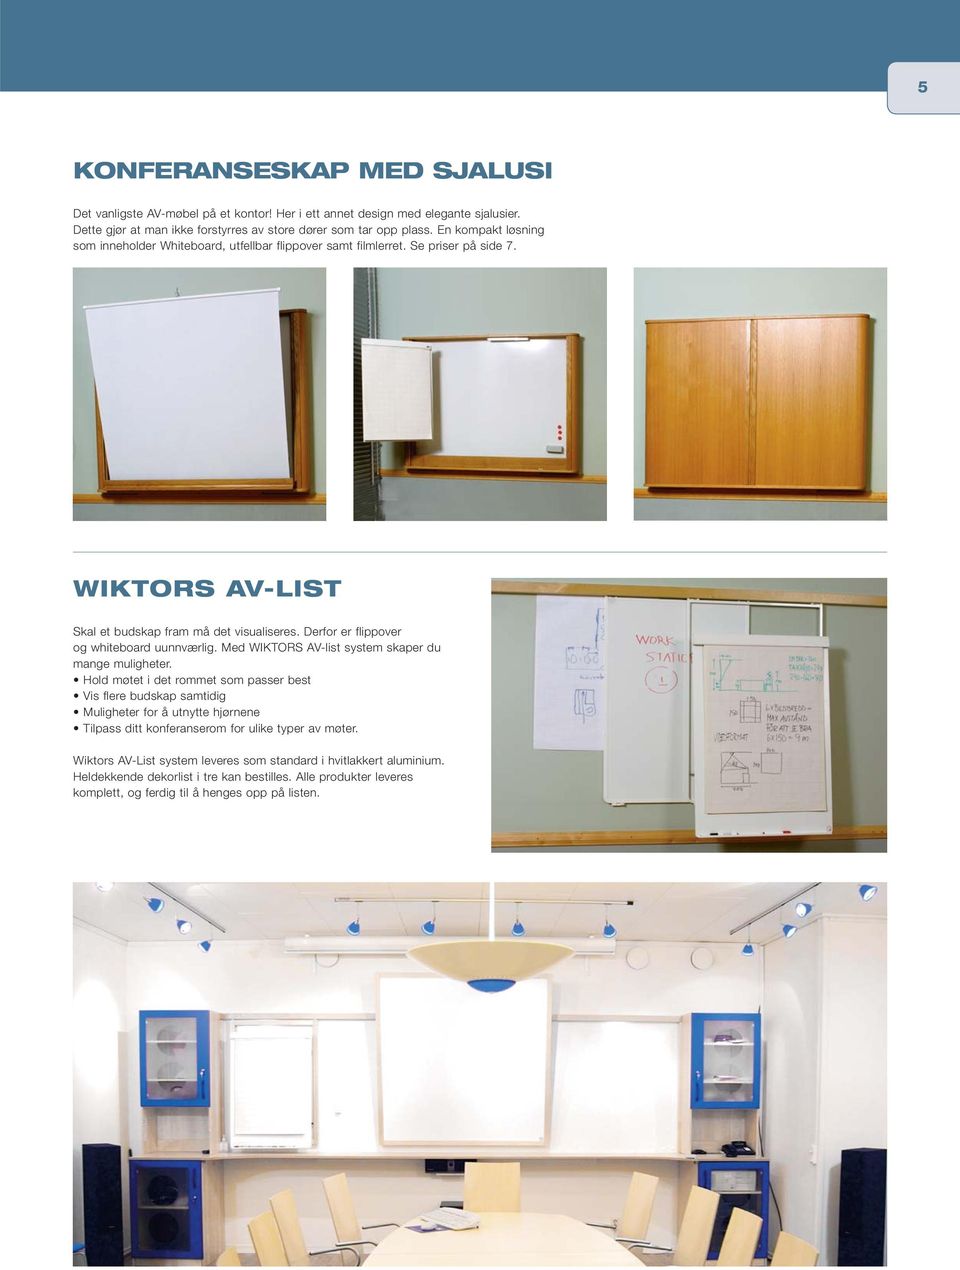 Derfor er flippover og whiteboard uunnværlig. Med WIKTORS AV-list system skaper du mange muligheter.